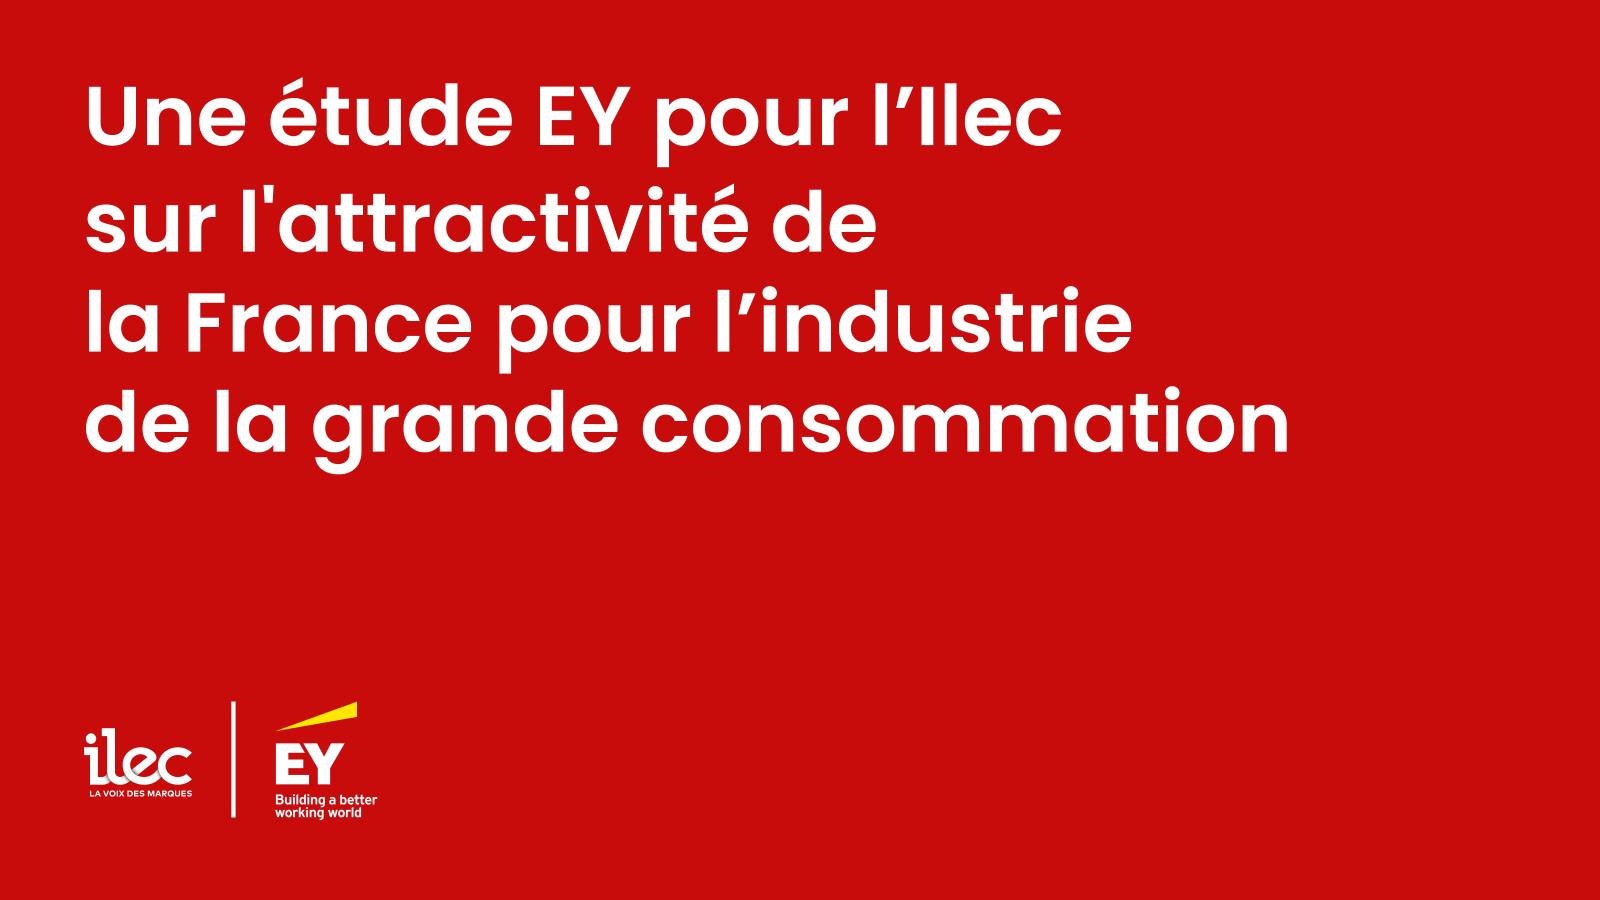 Une étude EY pour l’Ilec sur l’attractivité de la France pour l’industrie de la grande consommation